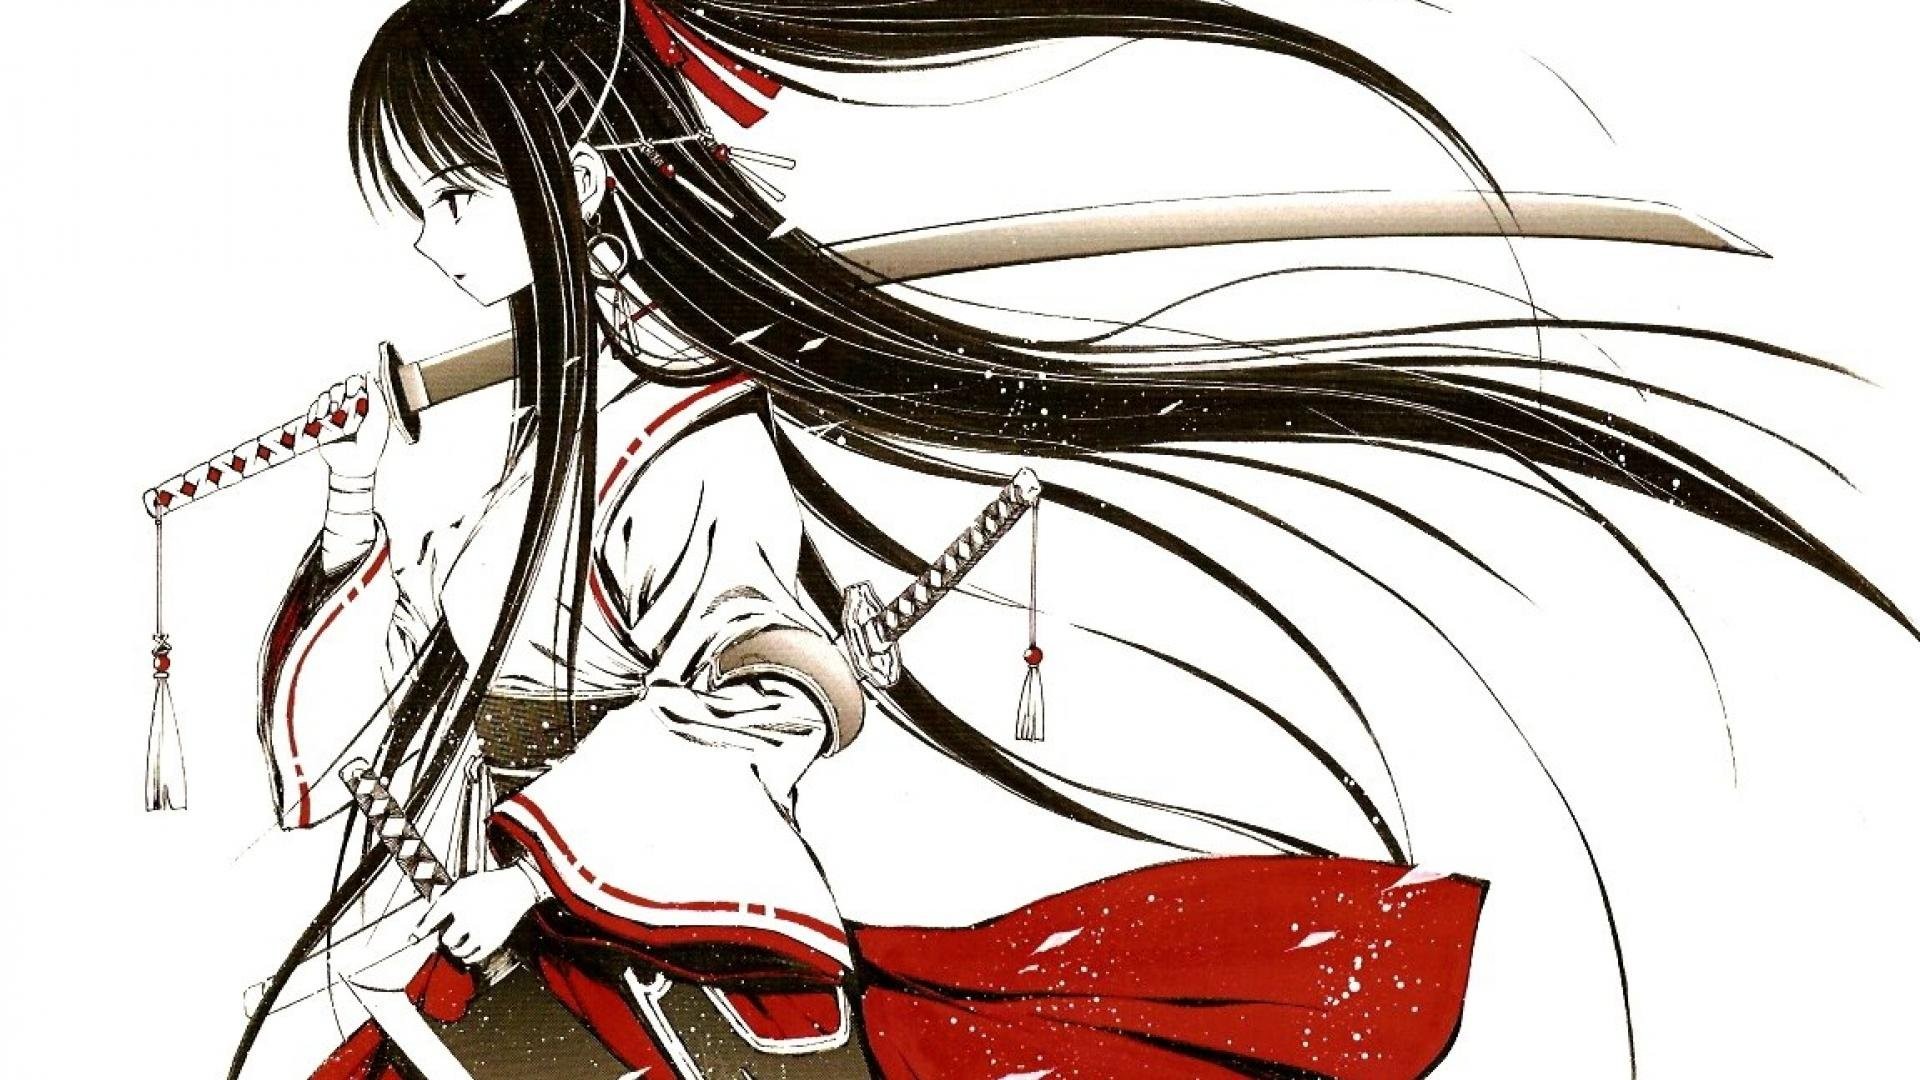 Anime-girl-samurai-female-warrior-swords-katana wallpaper | |  580751 | WallpaperUP